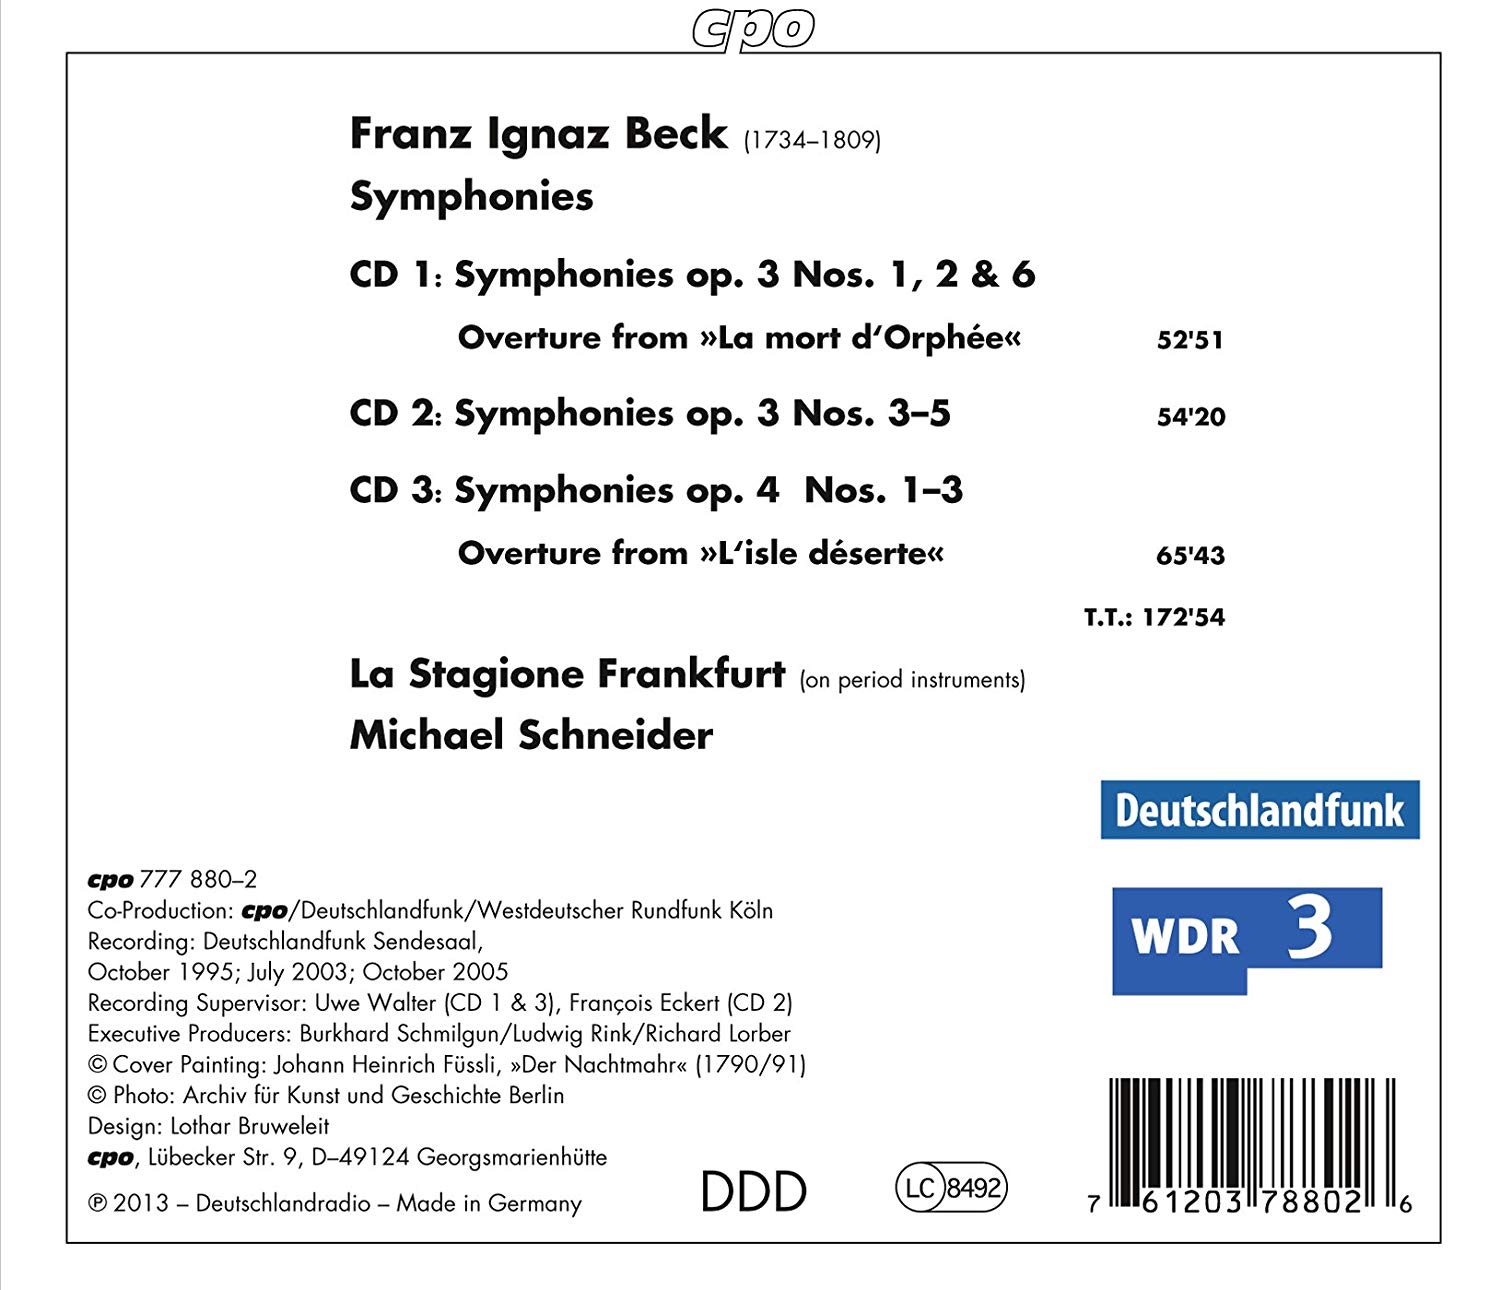 Beck: 9 Symphonies op. 3 nos. 1-6 & op. 4 nos. 1-3 - slide-1